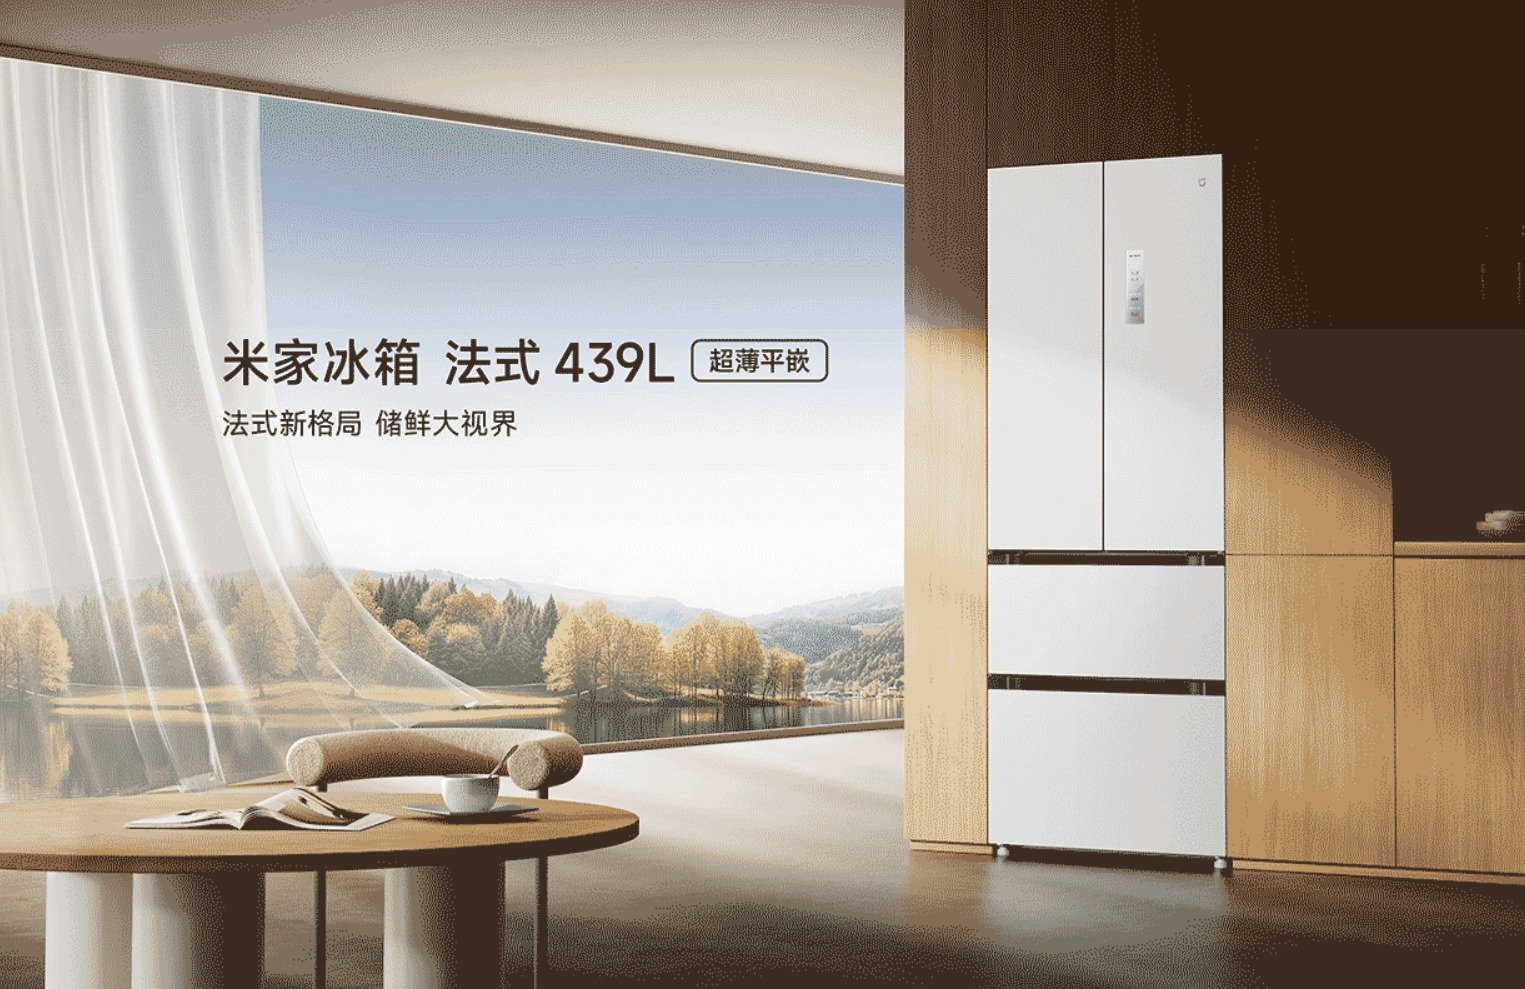 小米米家法式冰箱439L在中国发布